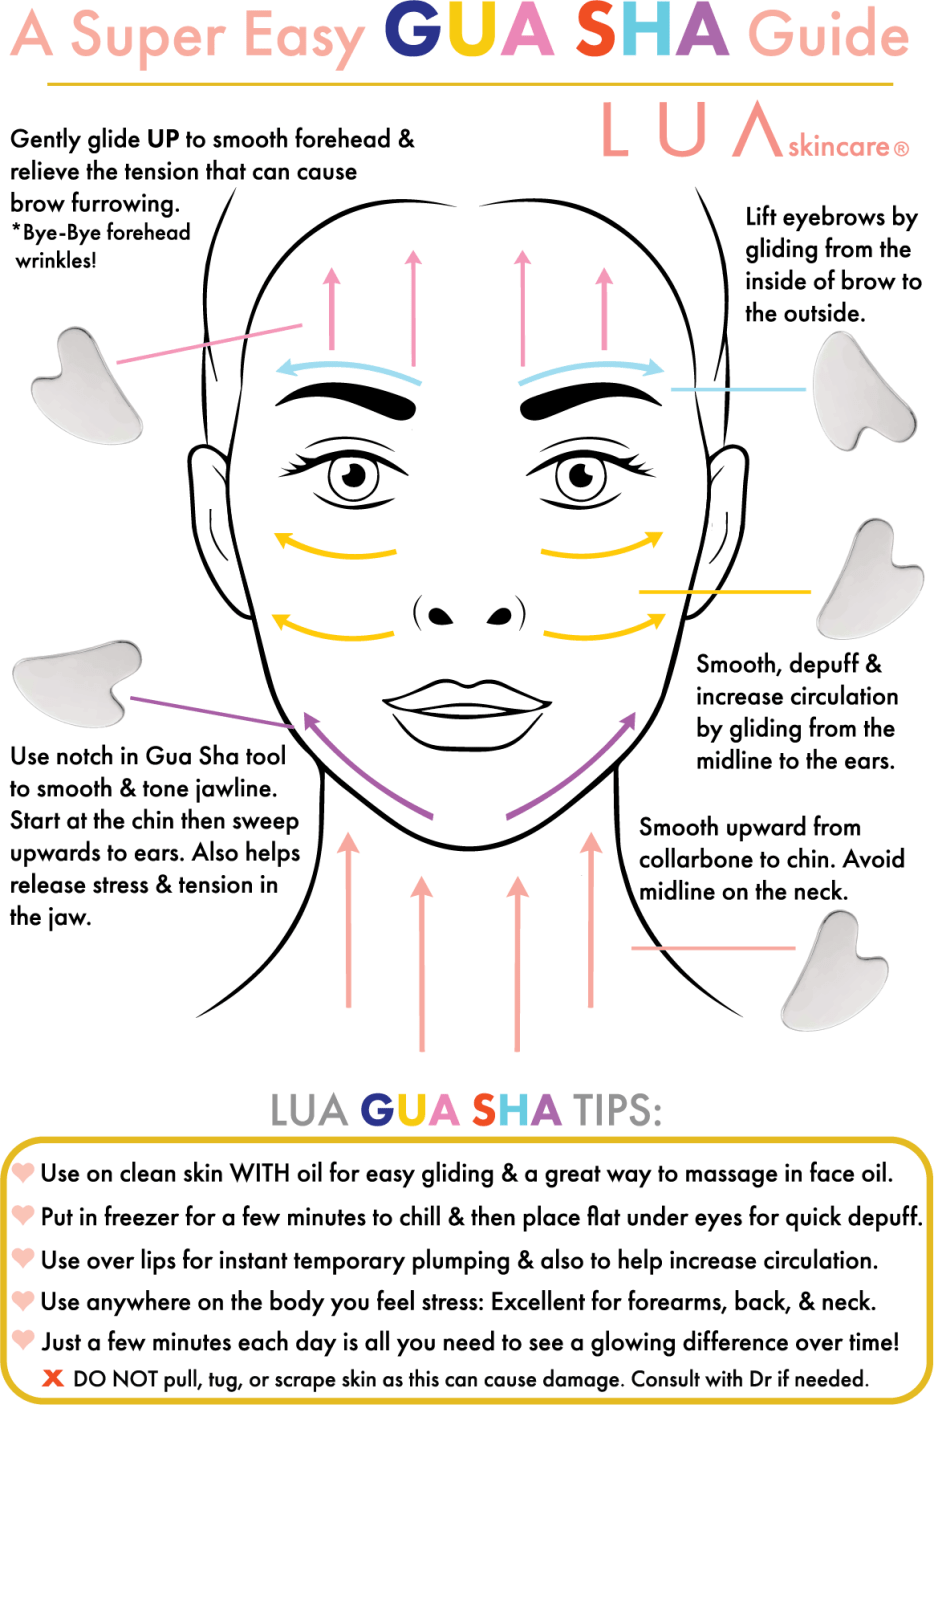 LUA GUA SHA by LUA skincare